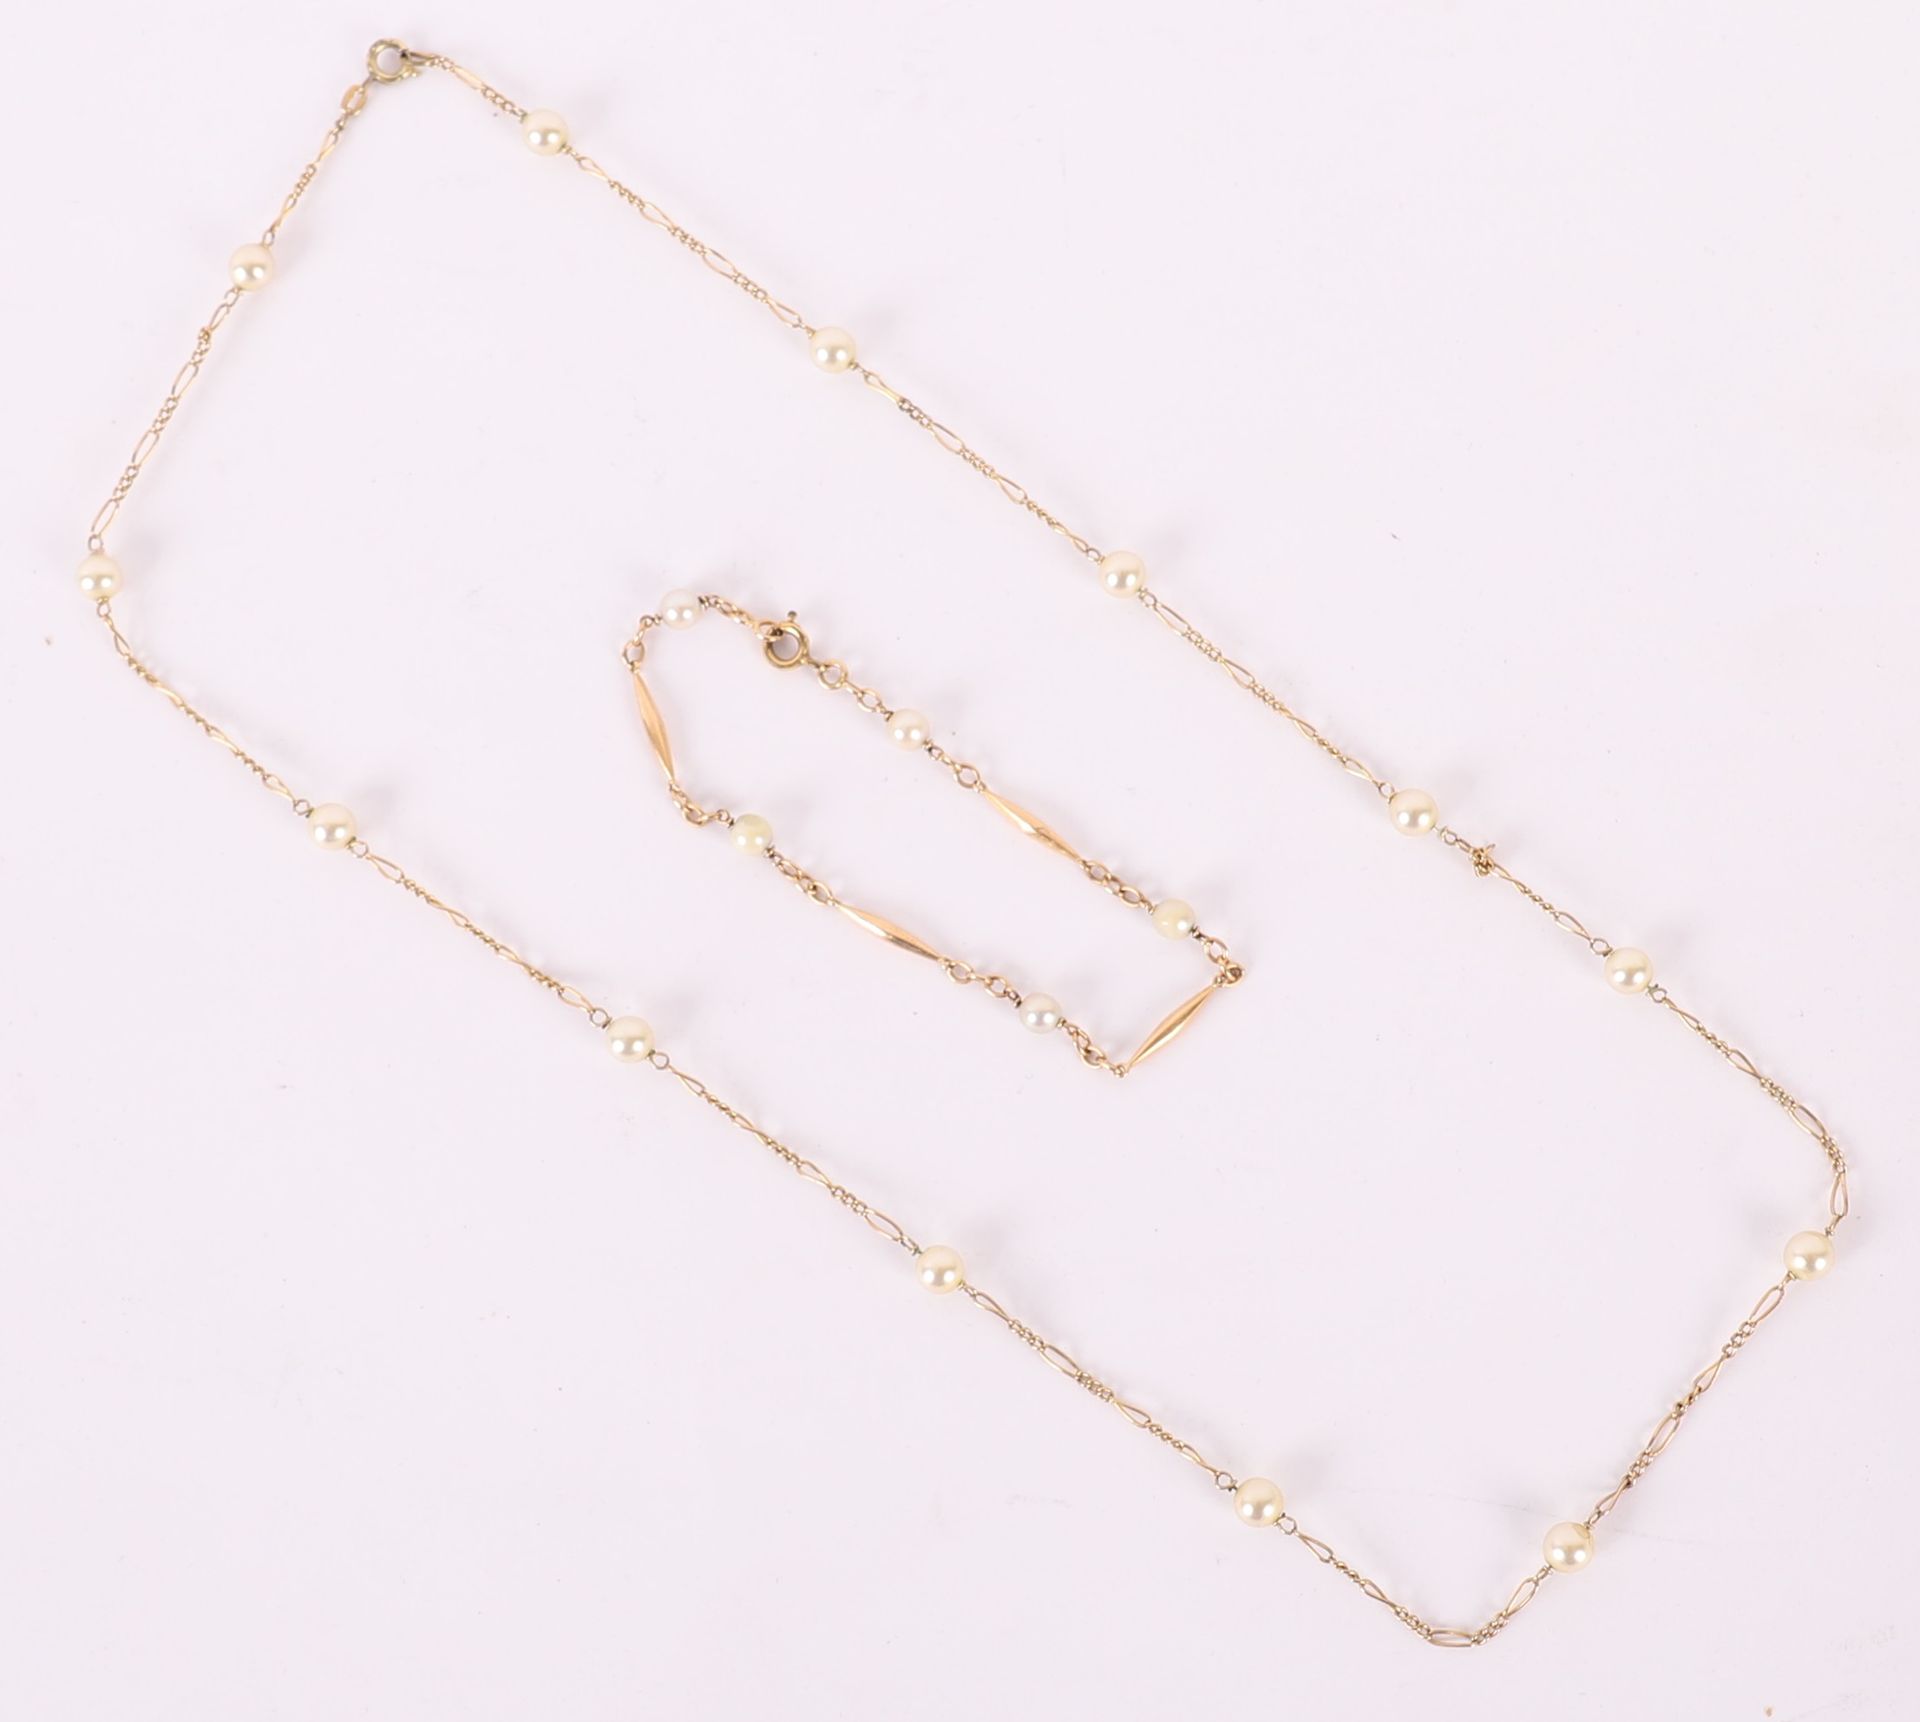 Null 镀金珍珠项链和手链 by dareal
长手链：18厘米
长项链：58厘米